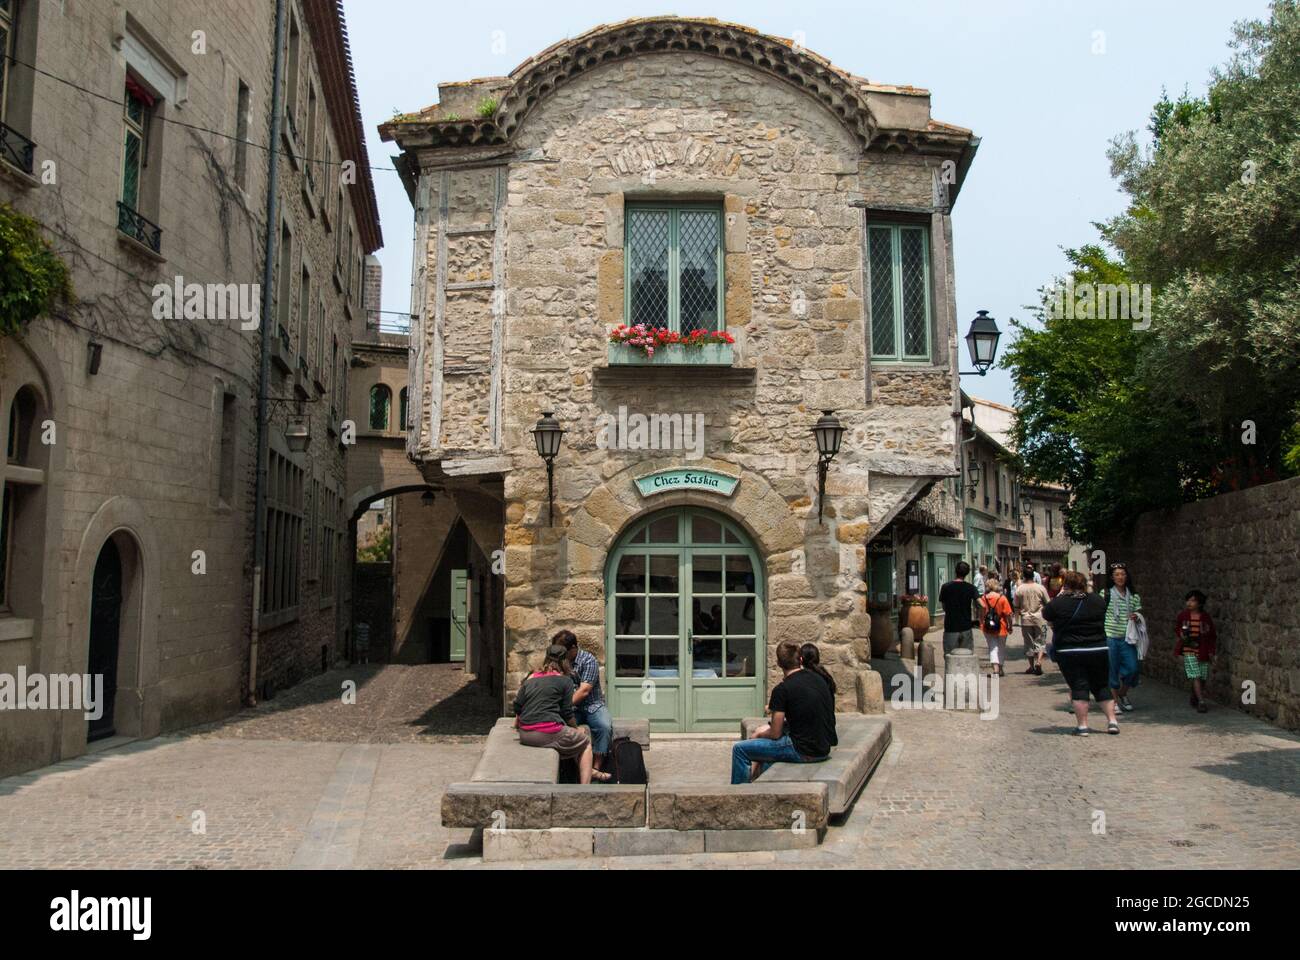 La ville fortifiée de Carcassonne, avec son ensemble de bâtiments médiévaux, est une attraction touristique populaire classée au patrimoine mondial de l'UNESCO Banque D'Images